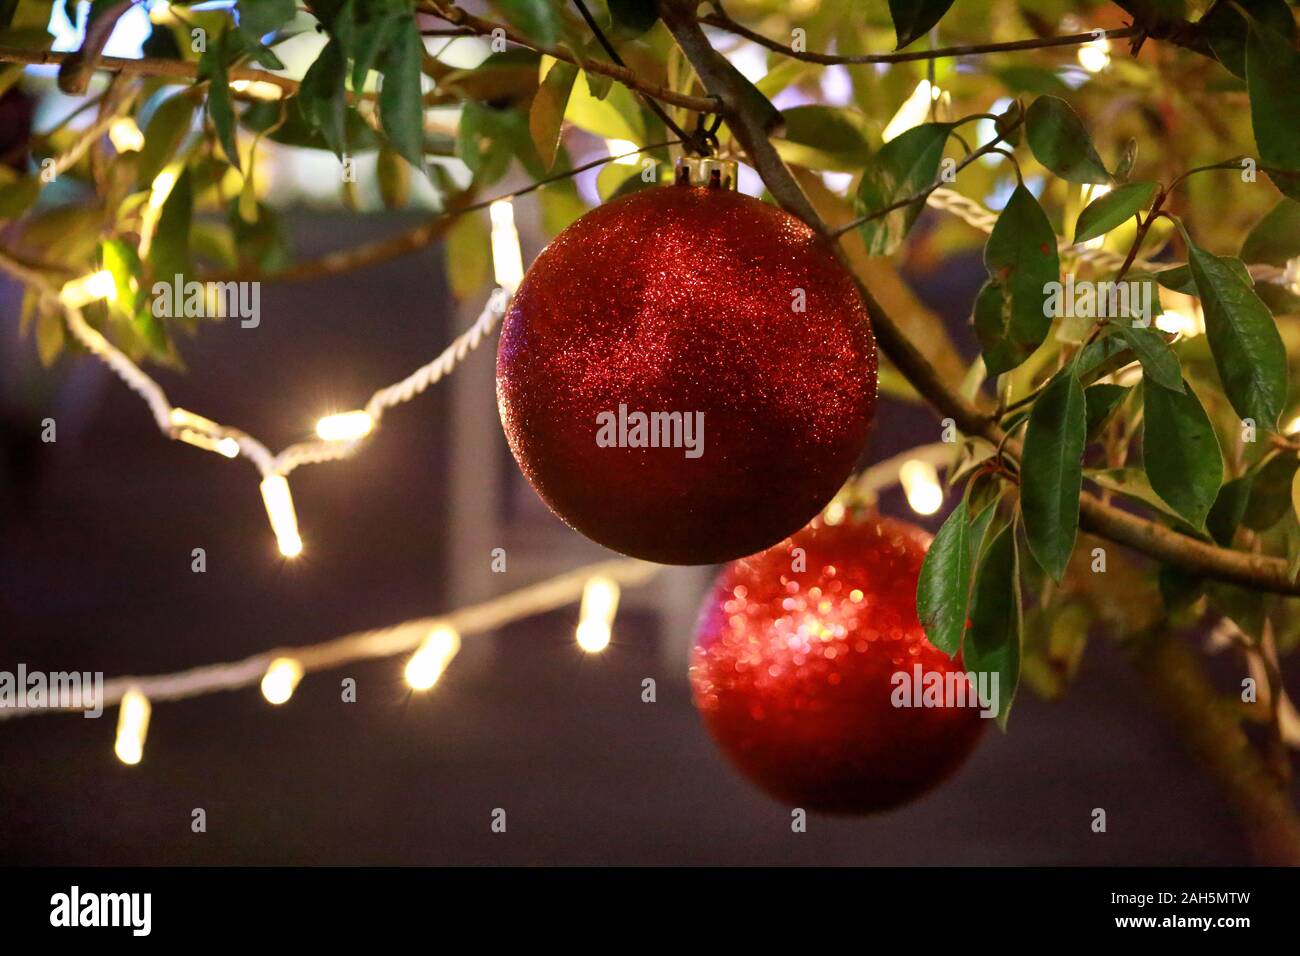 Traditionell dekorierte Christbaumkugeln, blinkende Lichter hängt an grüne Zweige Weihnachtsbaum. Runde Ornamente, helle rote Kugeln mit string Reis Glühlampen. Stockfoto